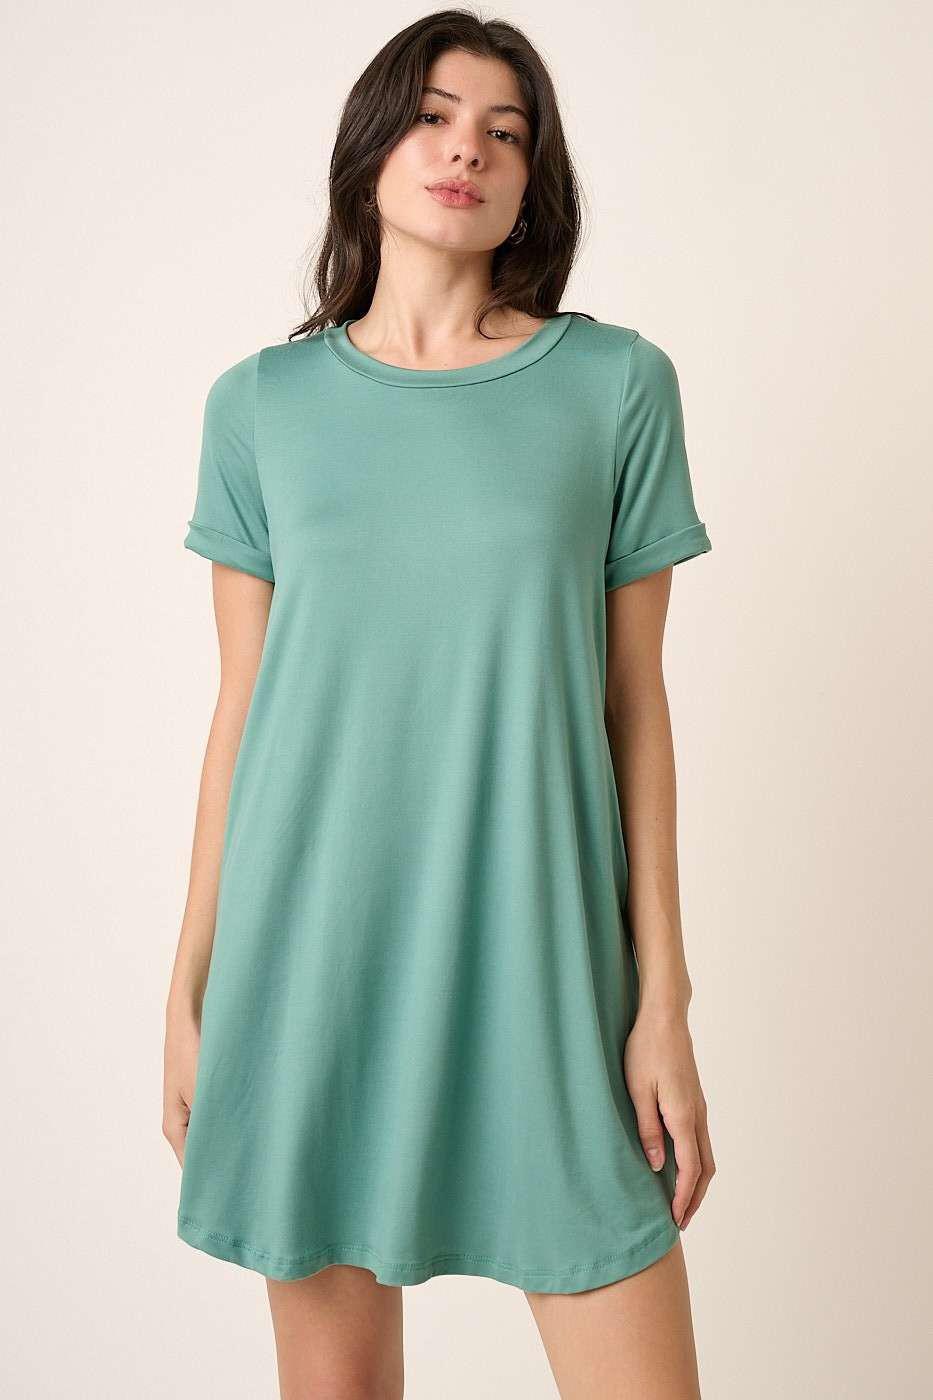 Jade Tshirt Dress